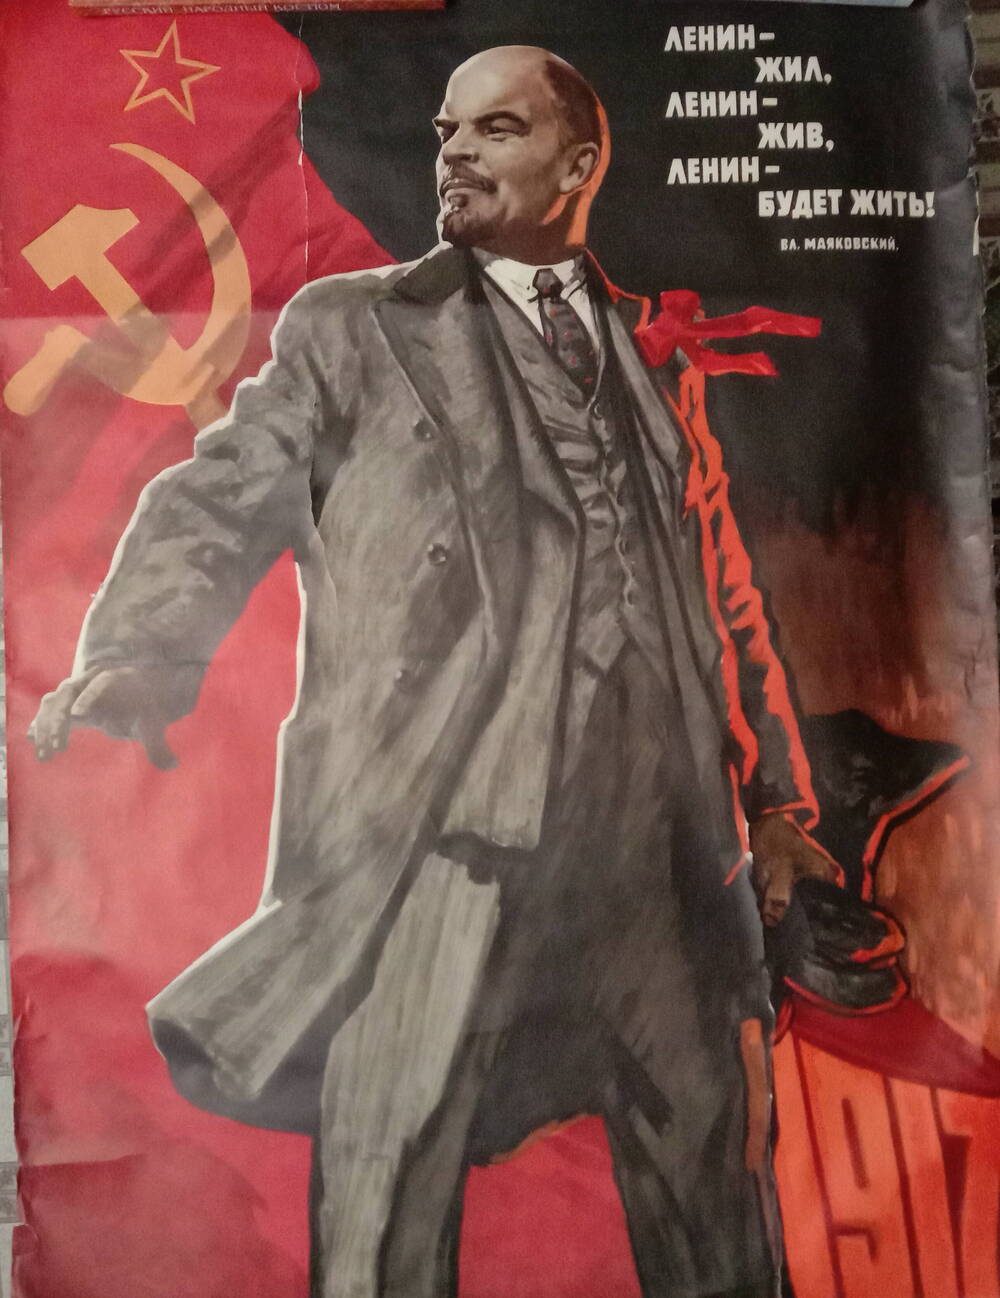 Плакат
«Ленин – жил, Ленин – жив, 
Ленин - будет жить!»